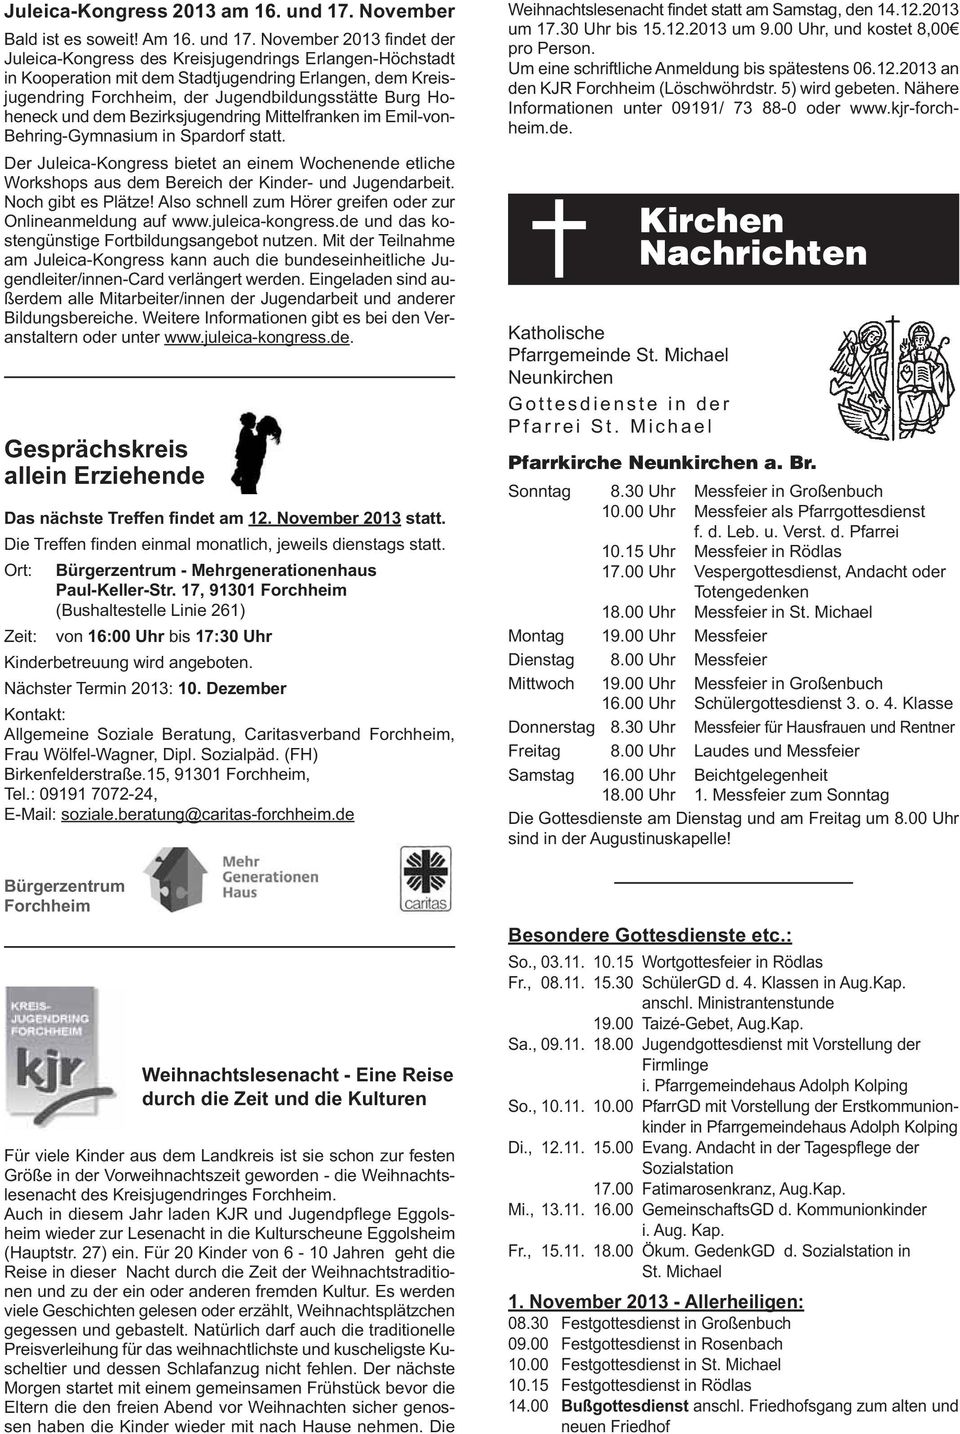 November 2013 findet der Juleica-Kongress des Kreisjugendrings Erlangen-Höchstadt in Kooperation mit dem Stadtjugendring Erlangen, dem Kreisjugendring Forchheim, der Jugendbildungsstätte Burg